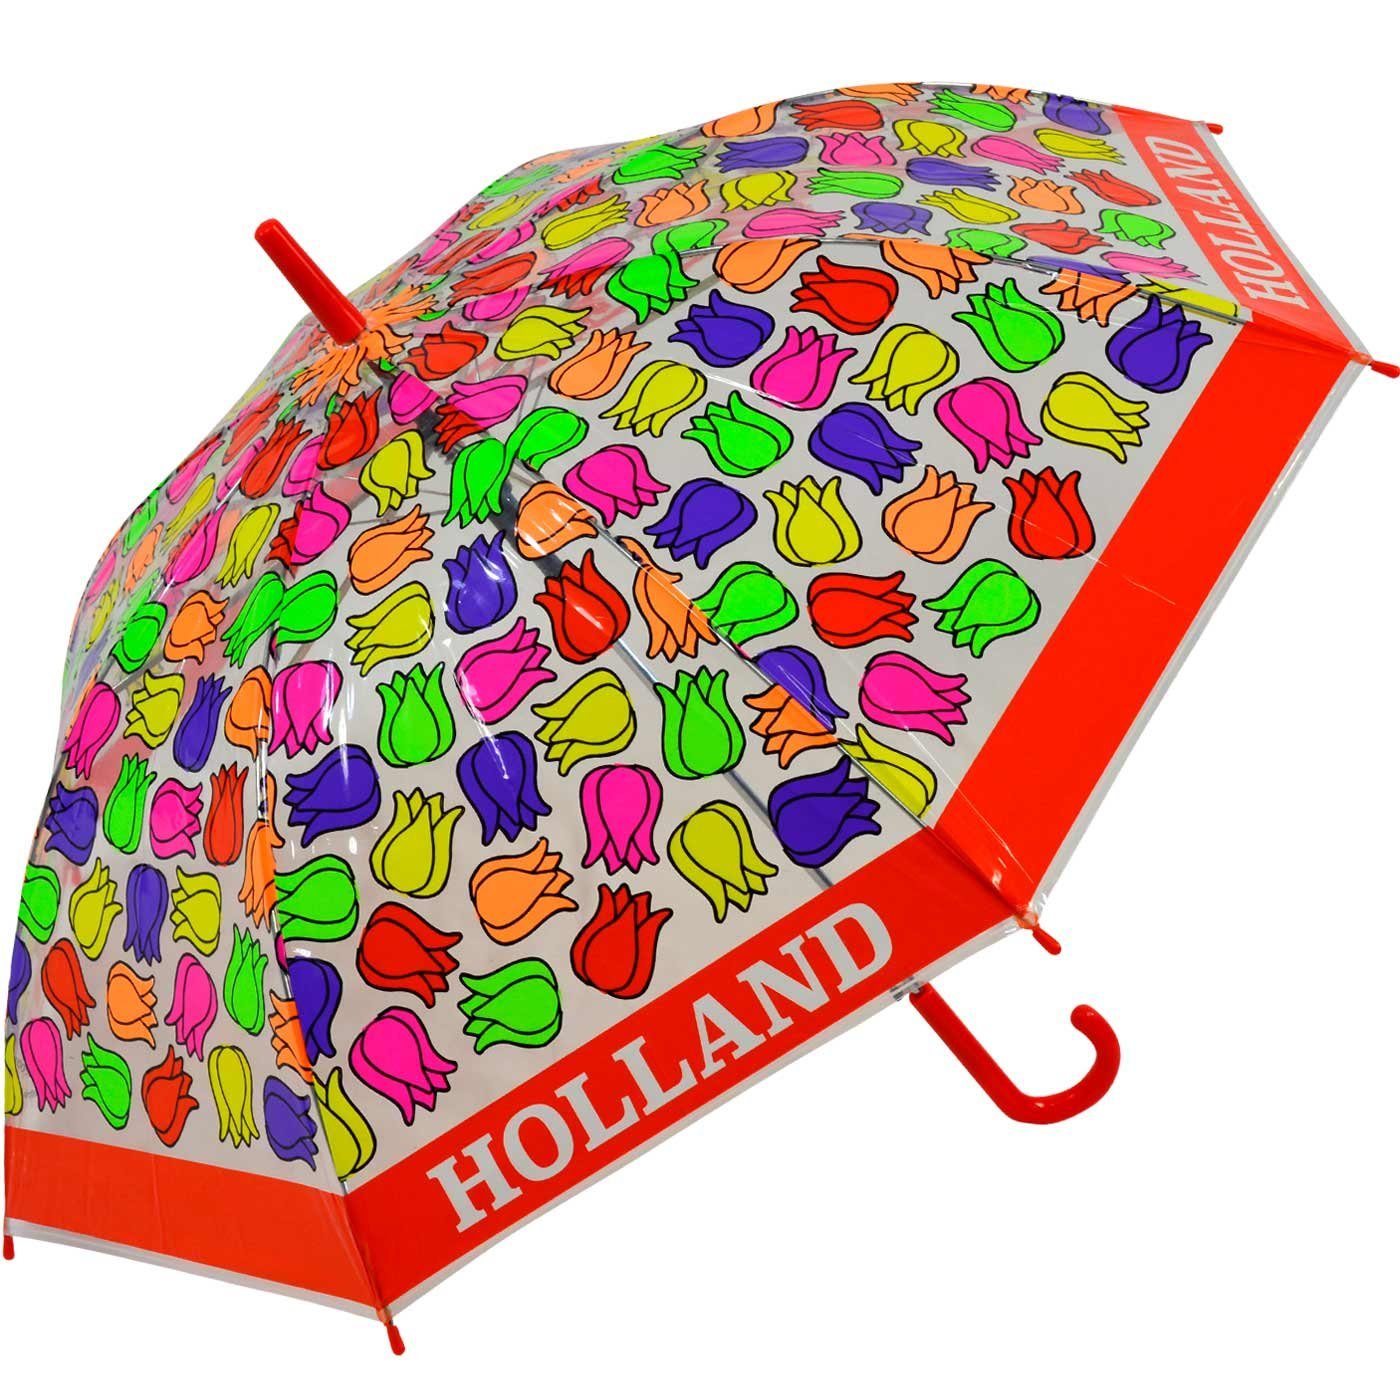 rot Langregenschirm transparent - bunt Kinderschirm Impliva durchsichtig Falconetti Tulpen,